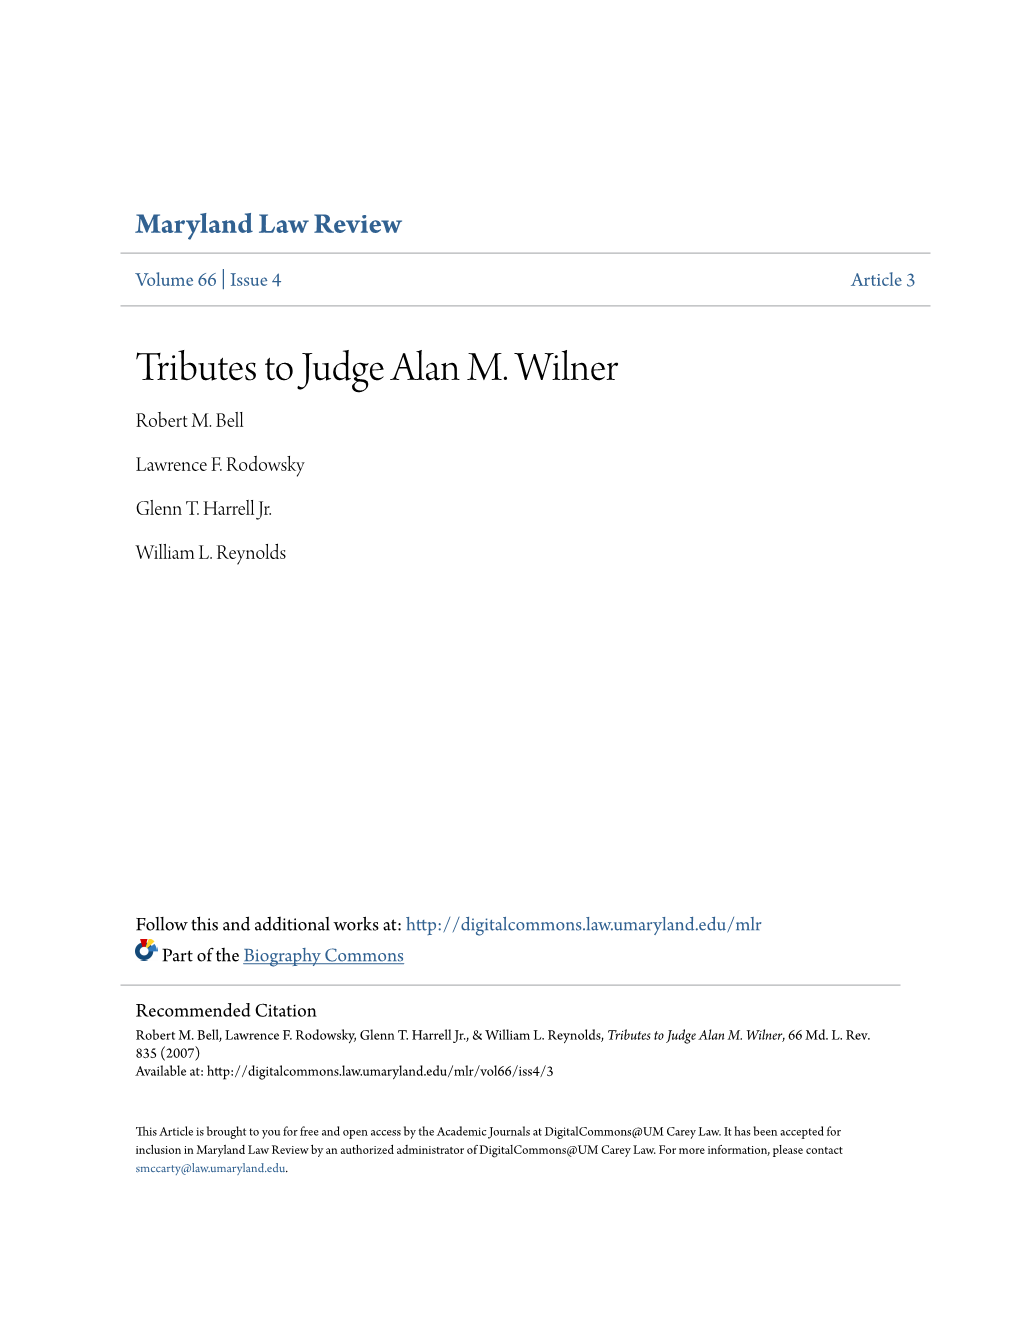 Tributes to Judge Alan M. Wilner Robert M